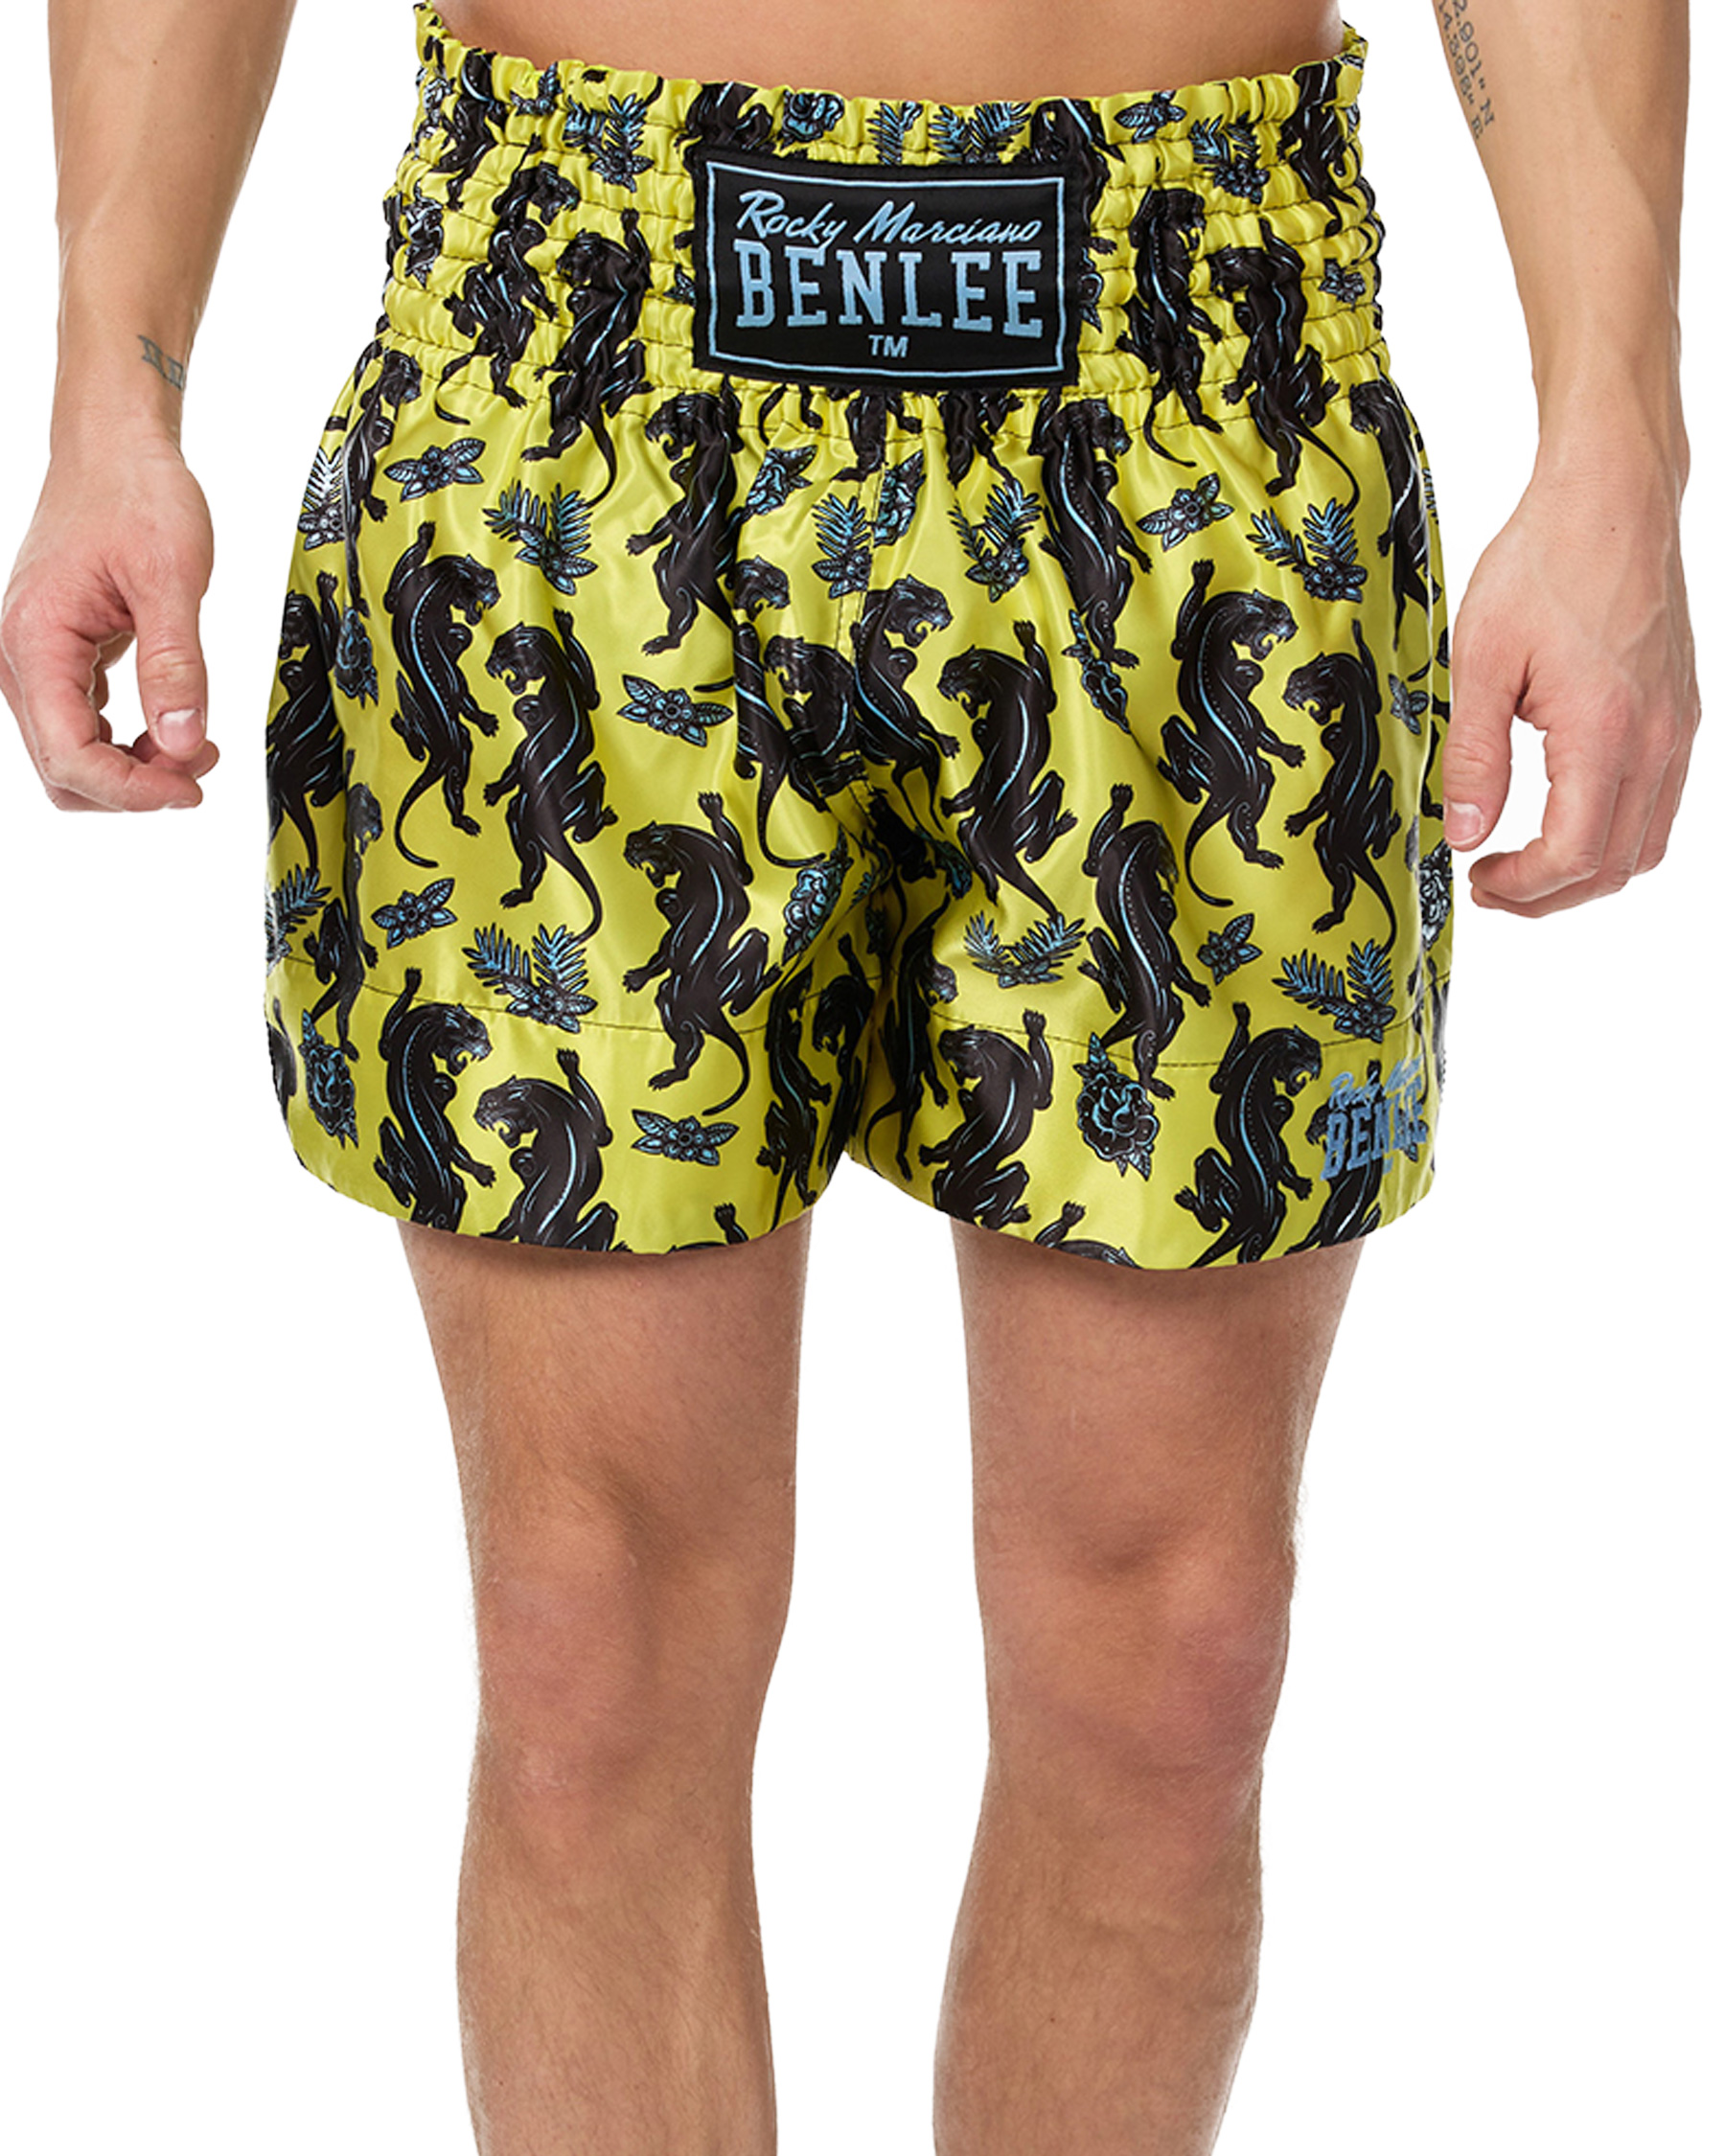 BenLee muay thai shorts Panther Thai